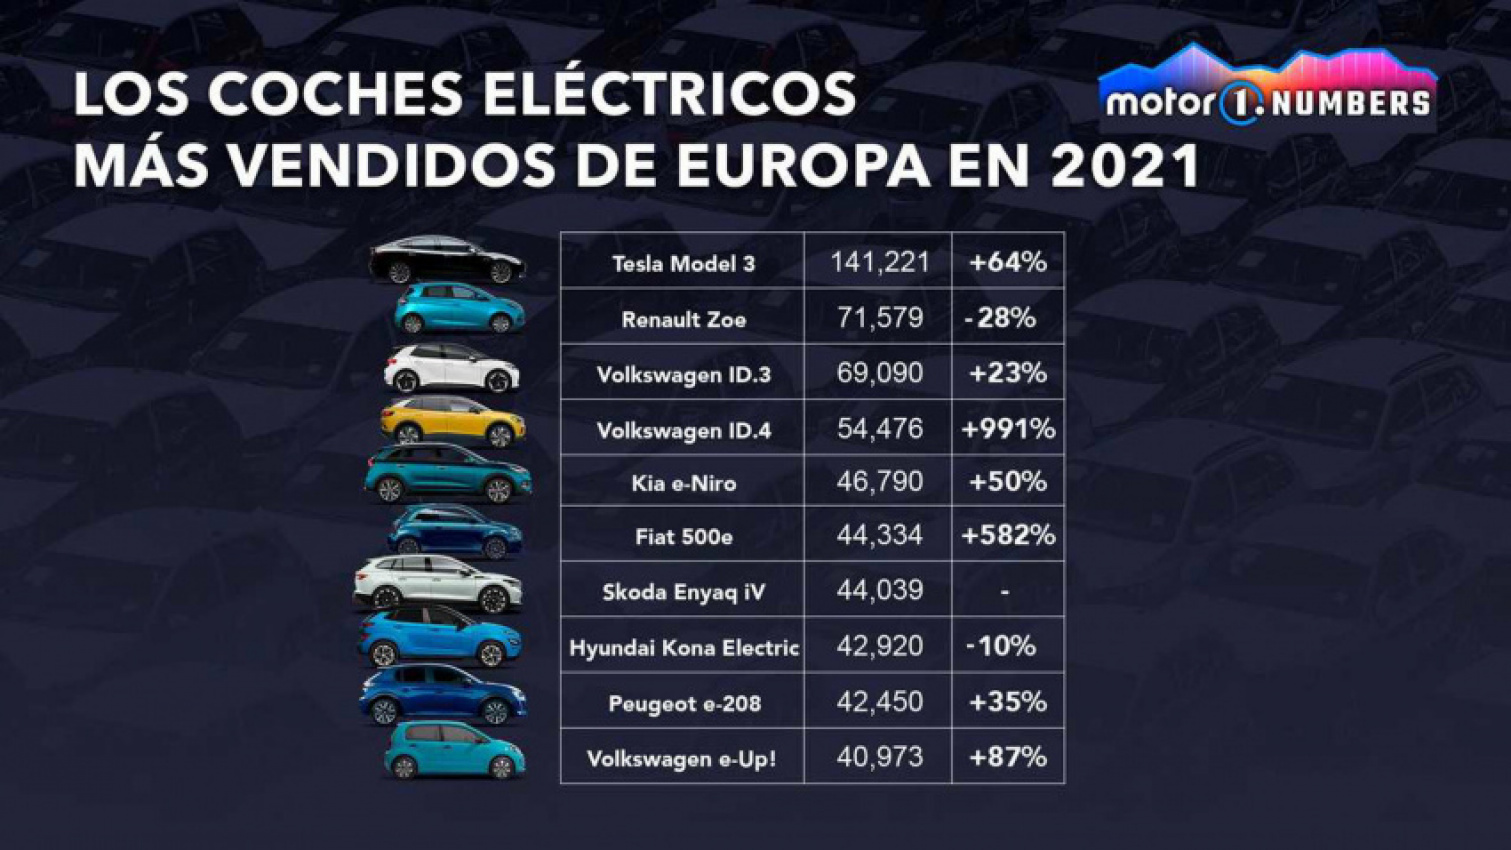 autos, cars, tesla, volkswagen, volkswagen (y no tesla) es el líder del coche eléctrico en europa